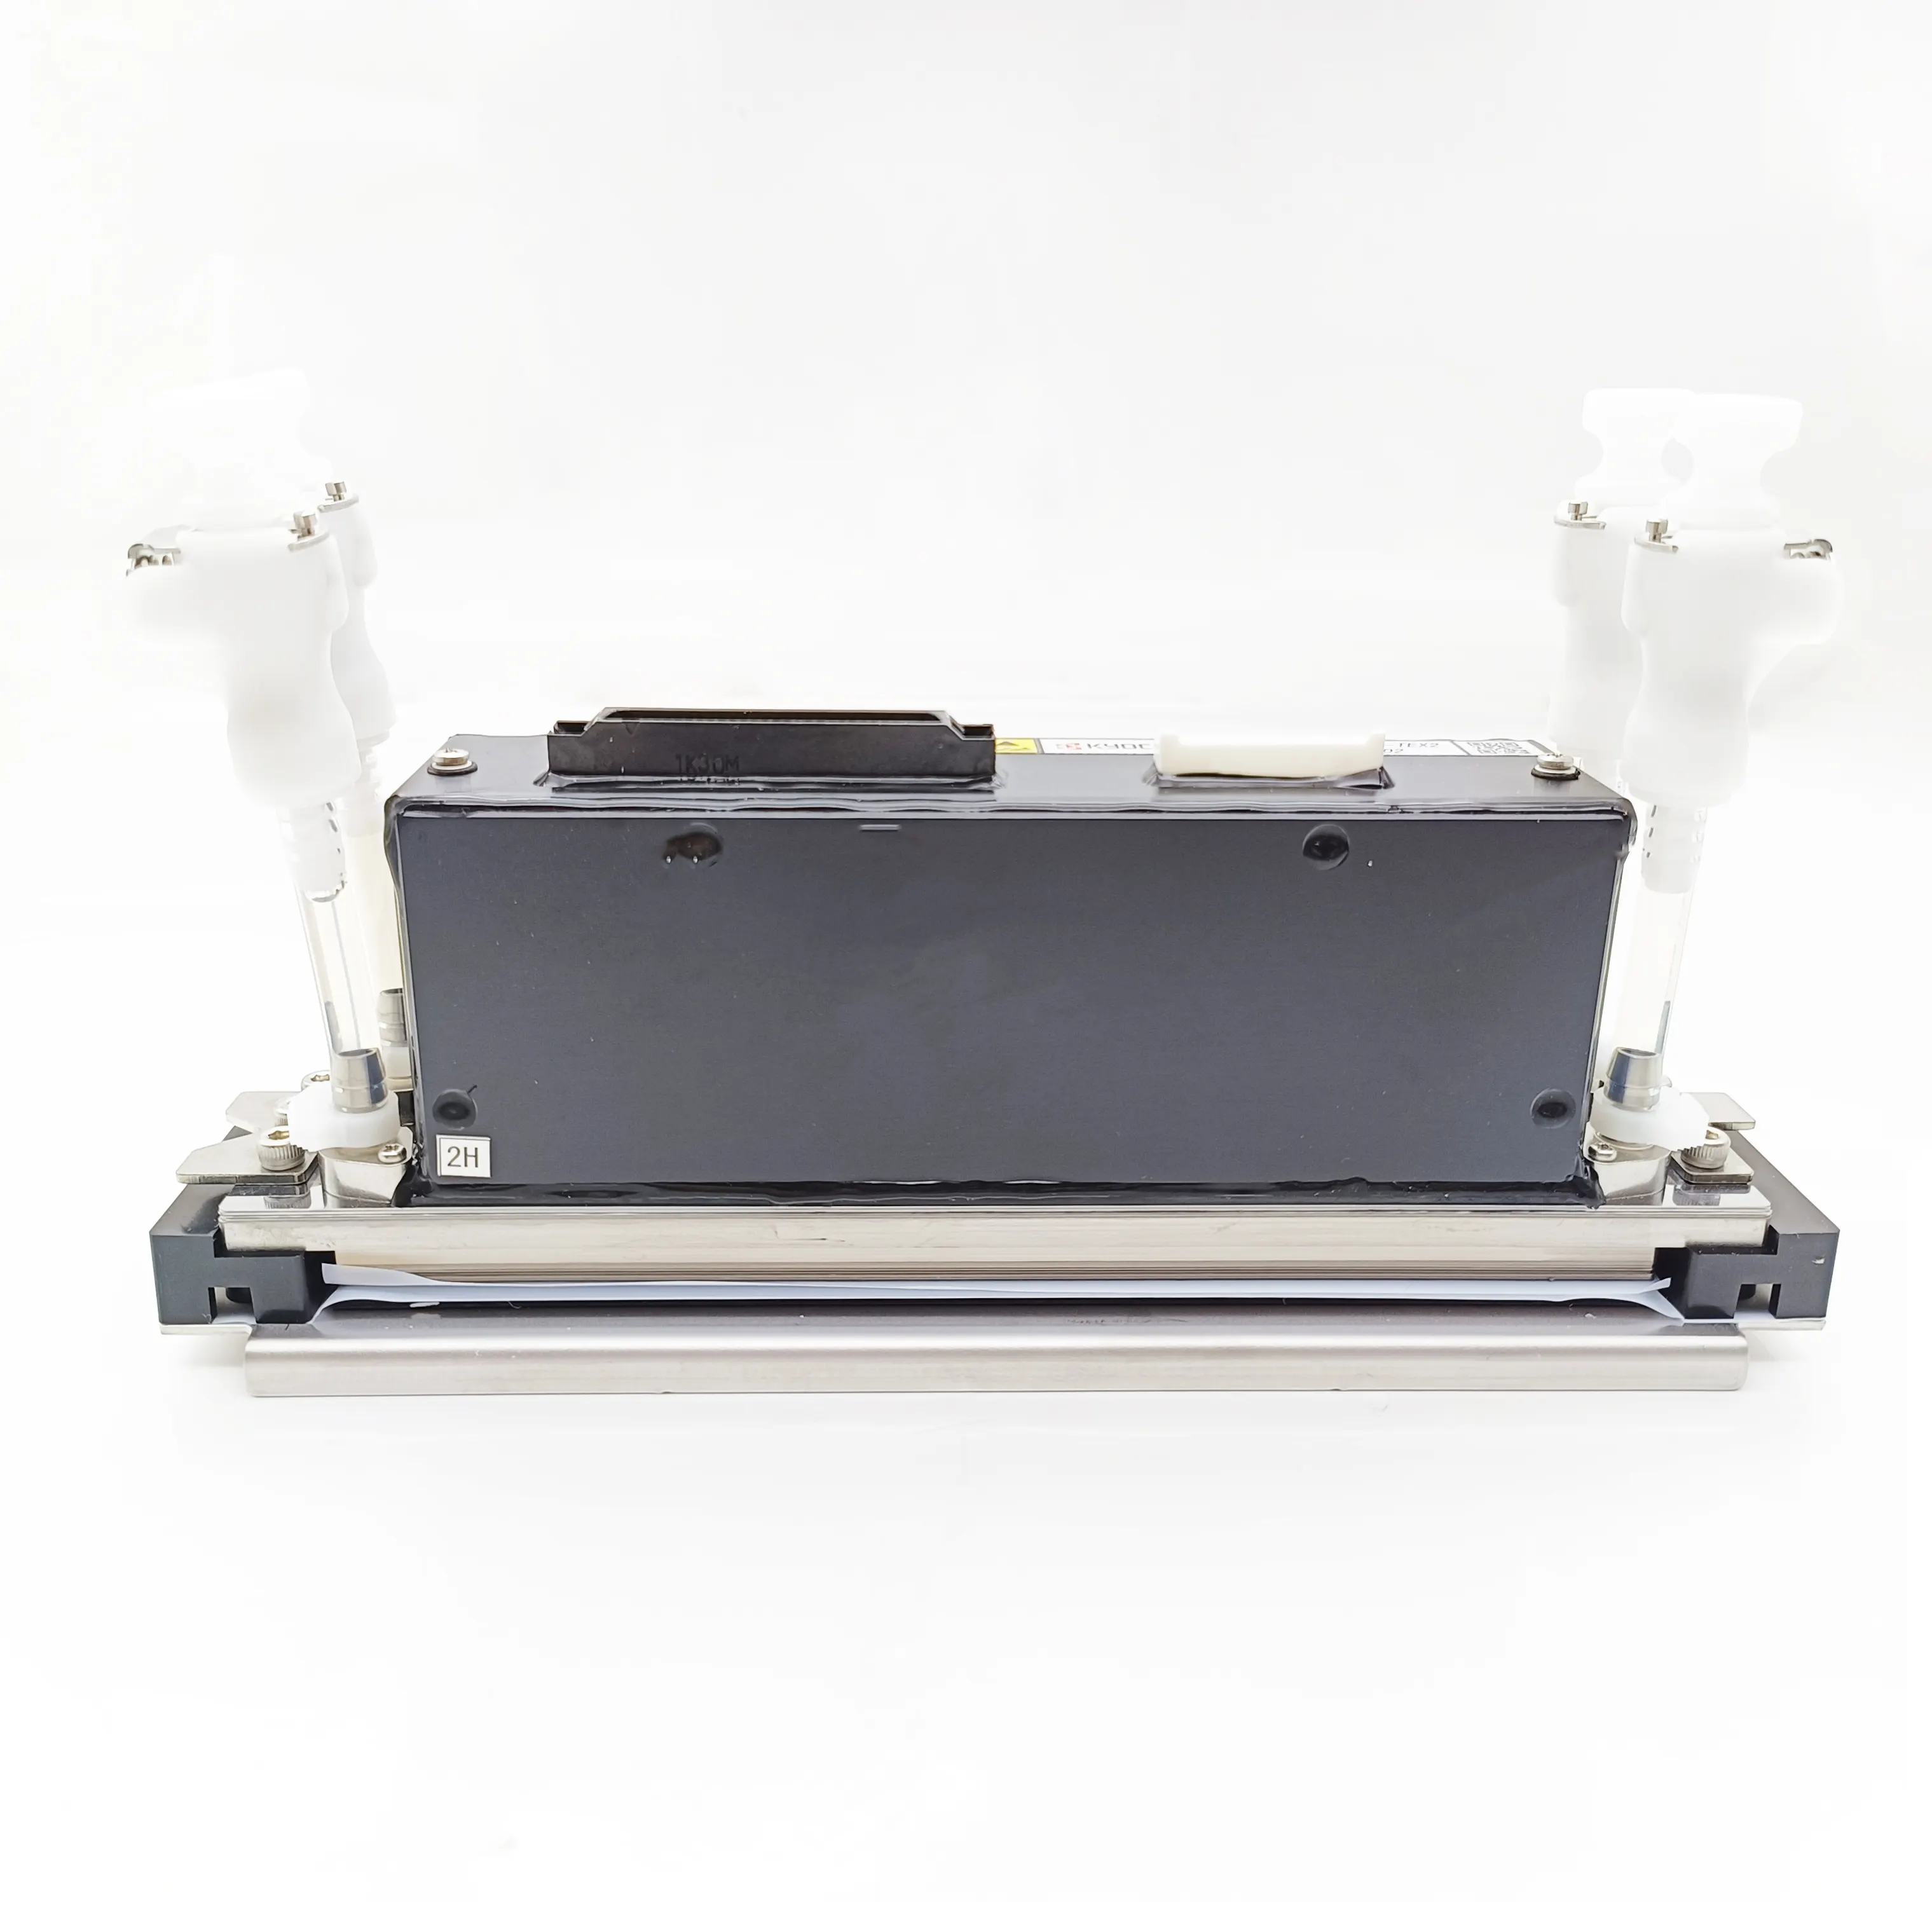 KJ4B-0300 KJ4A-0300 печатающая головка для струйного принтера Kyocera